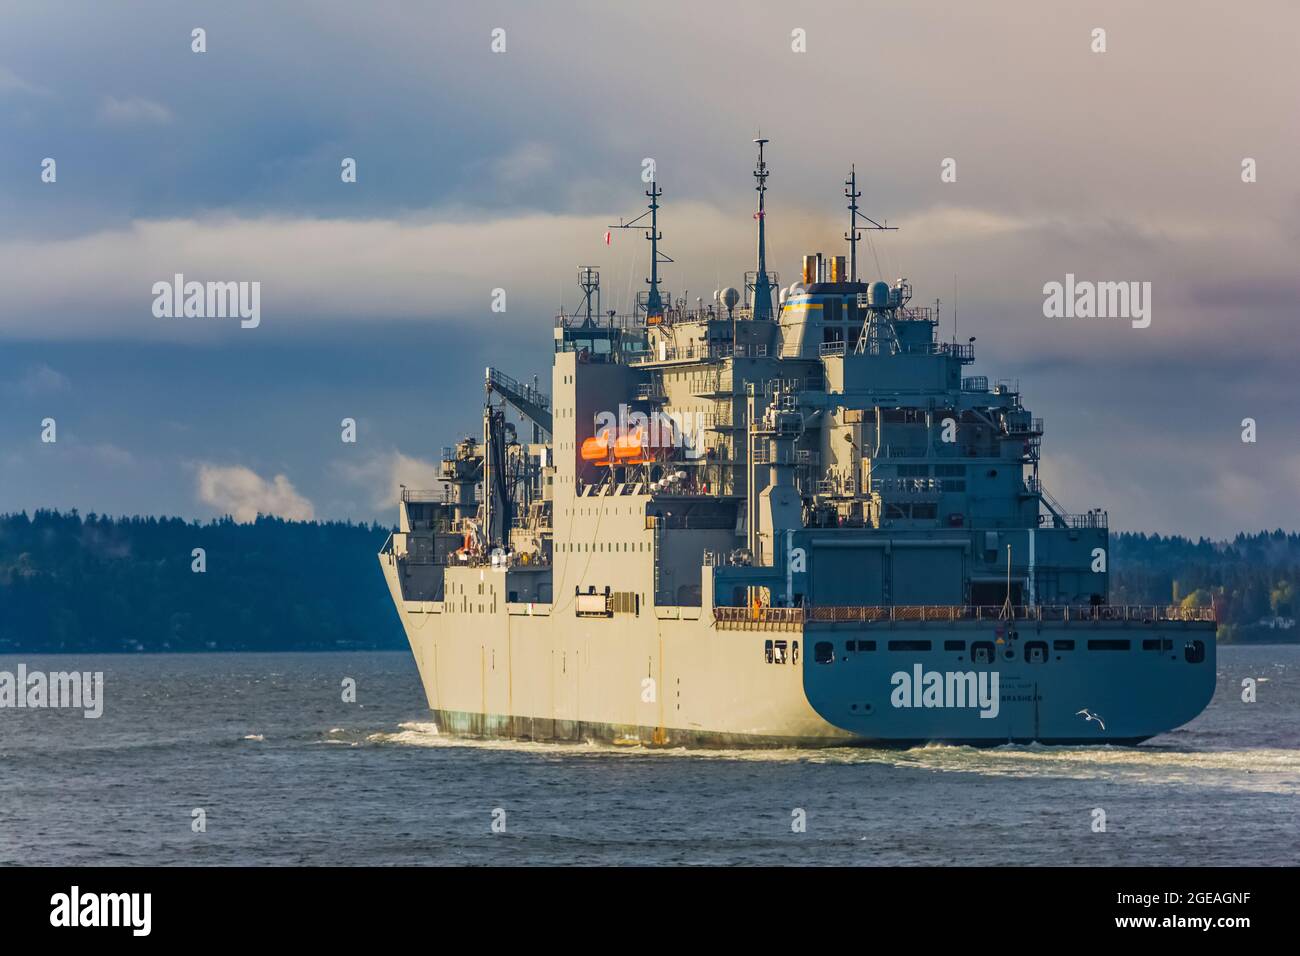 El buque de la Marina de los Estados Unidos Carl Brashear está en marcha en Puget Sound después de dejar el astillero naval Puget Sound y las instalaciones de mantenimiento intermedio en Bremerton, Wash Foto de stock